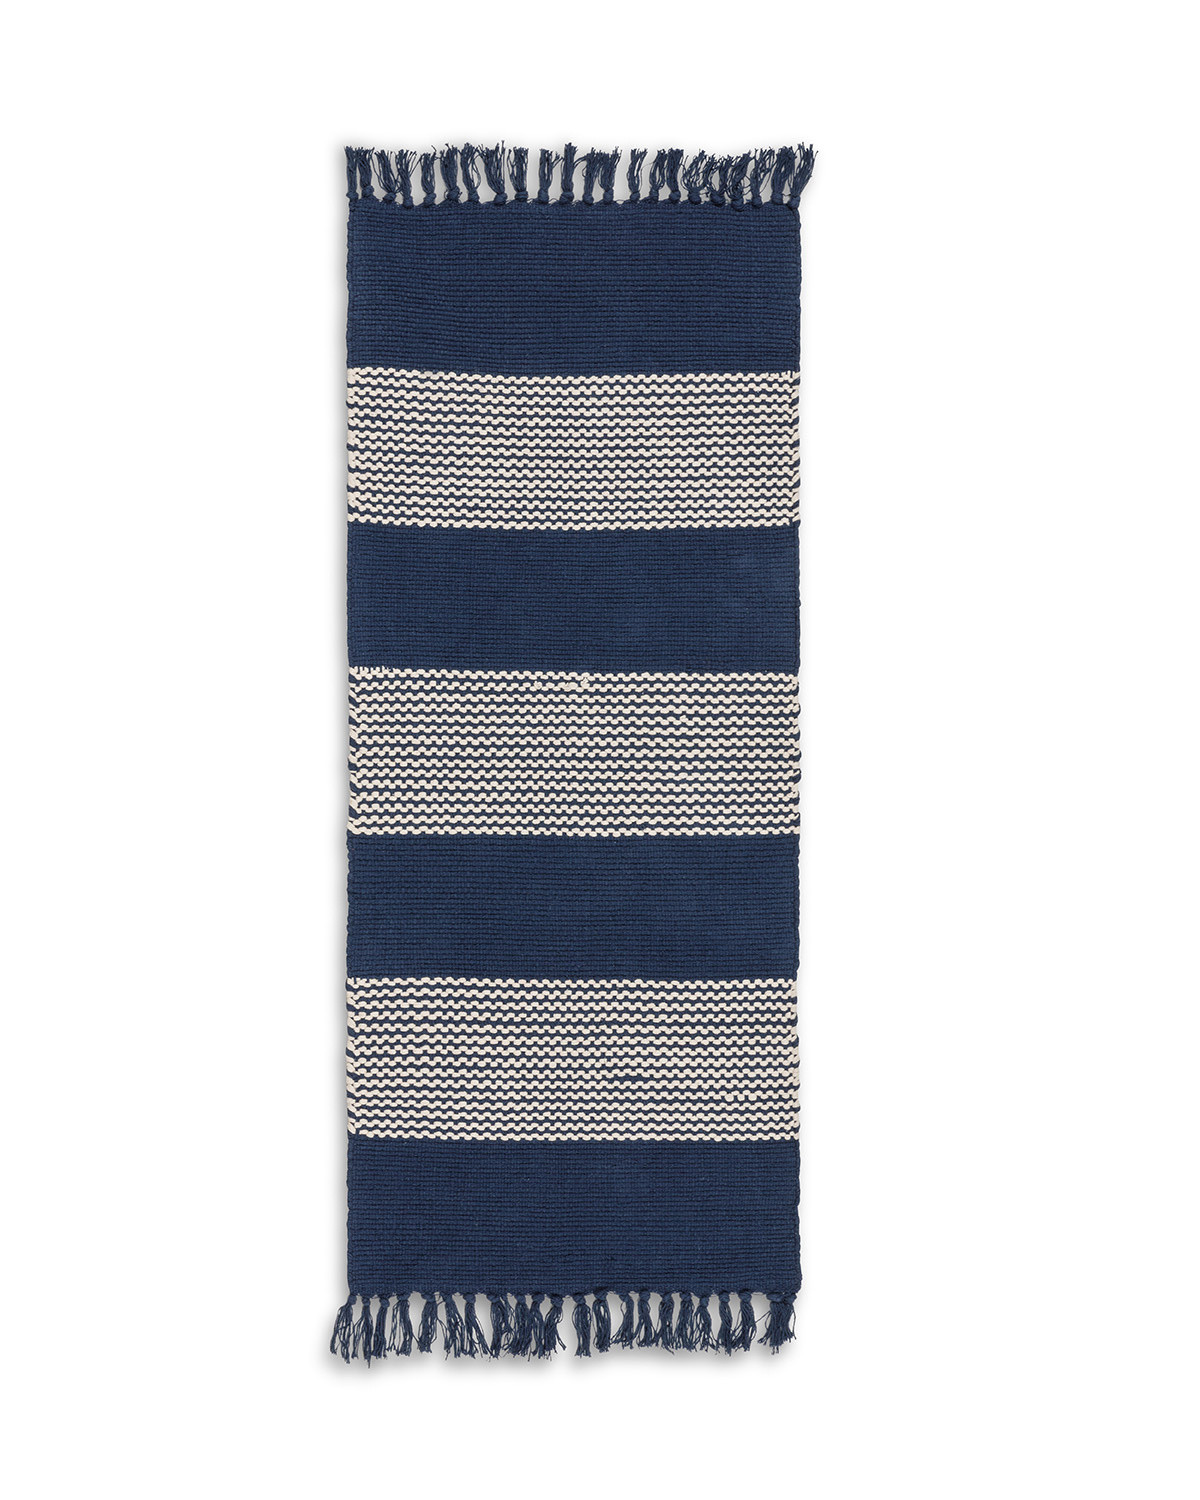 Striped cotton kitchen rug, Blue, large image number 0